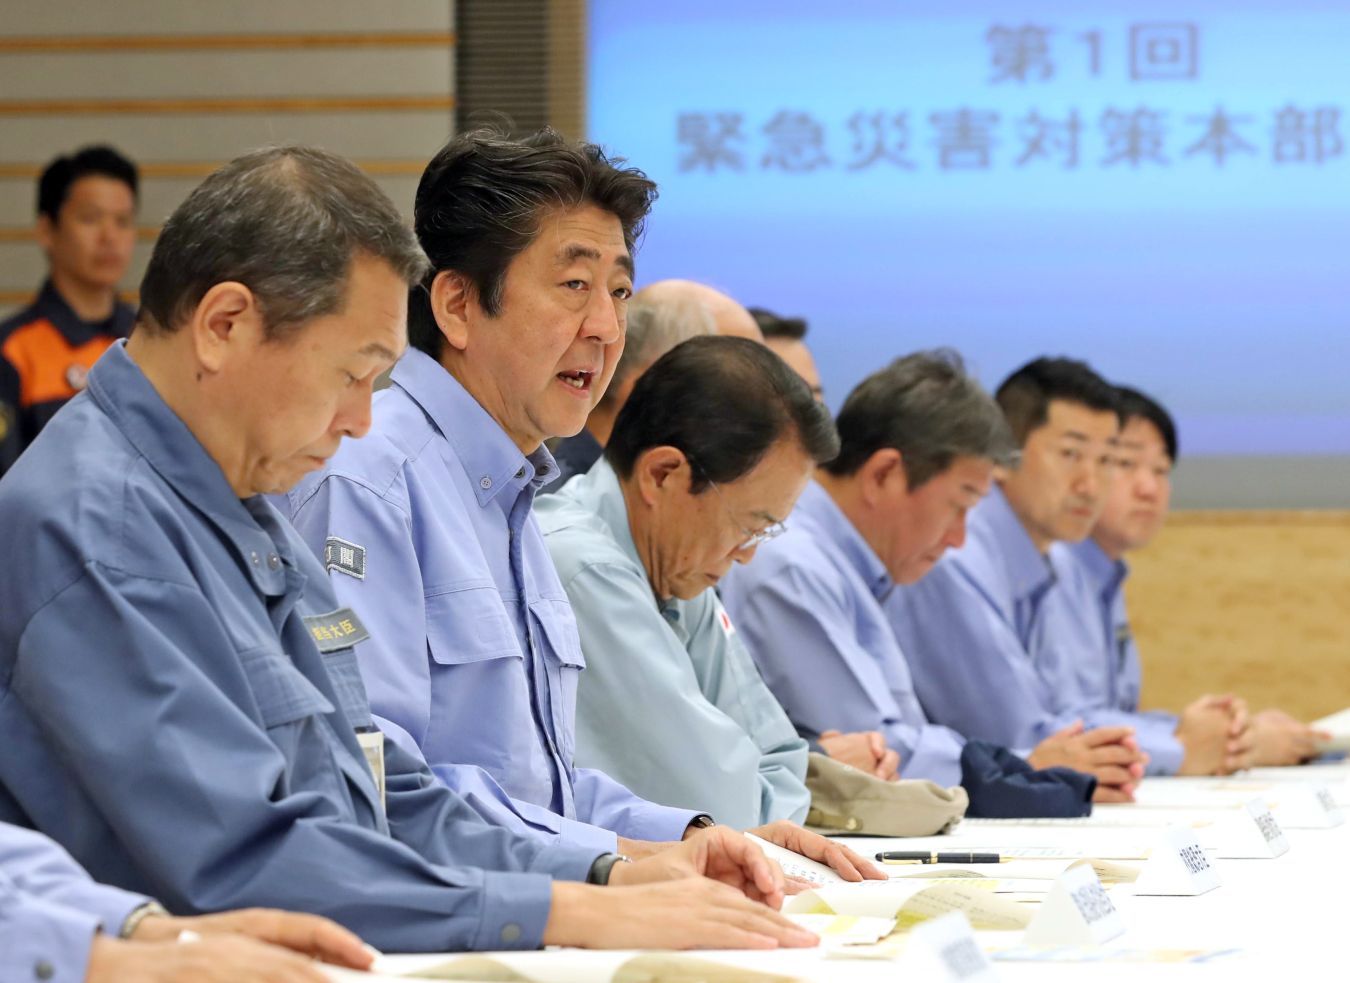 Prime Minister Abe Announces LDP Bid As He Leads Sankei-FNN Poll